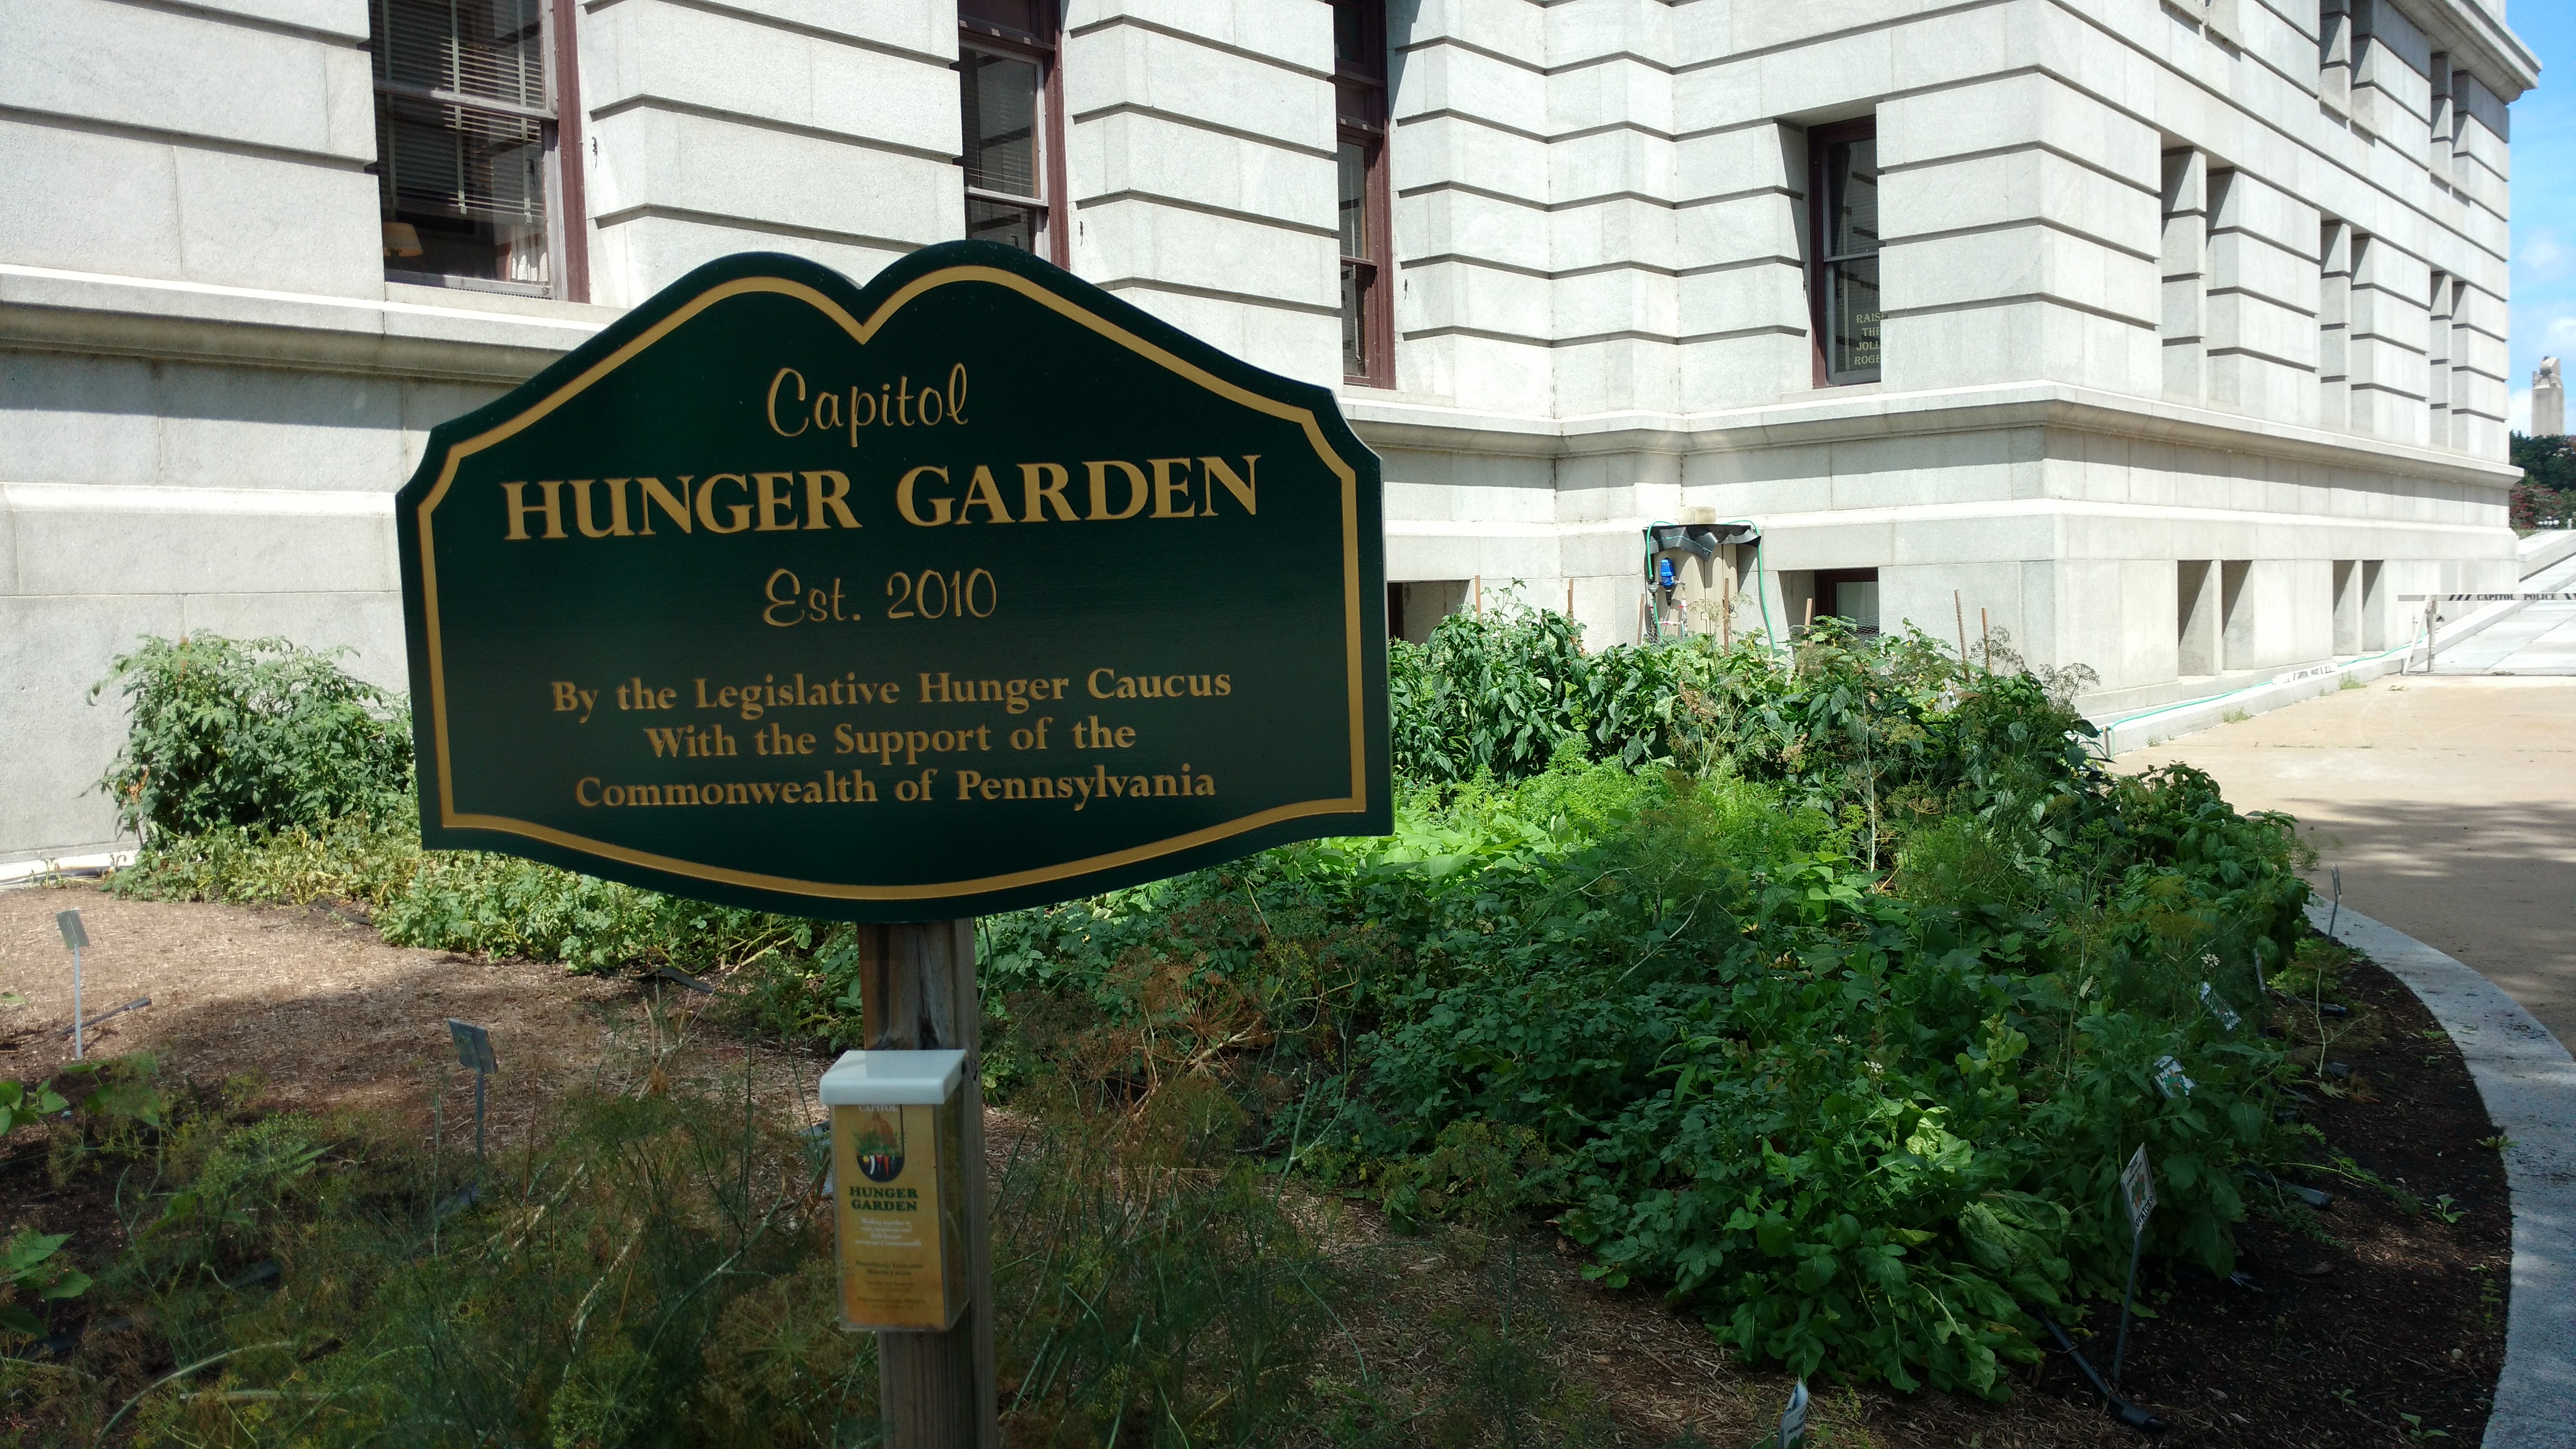 The Hunger Garden